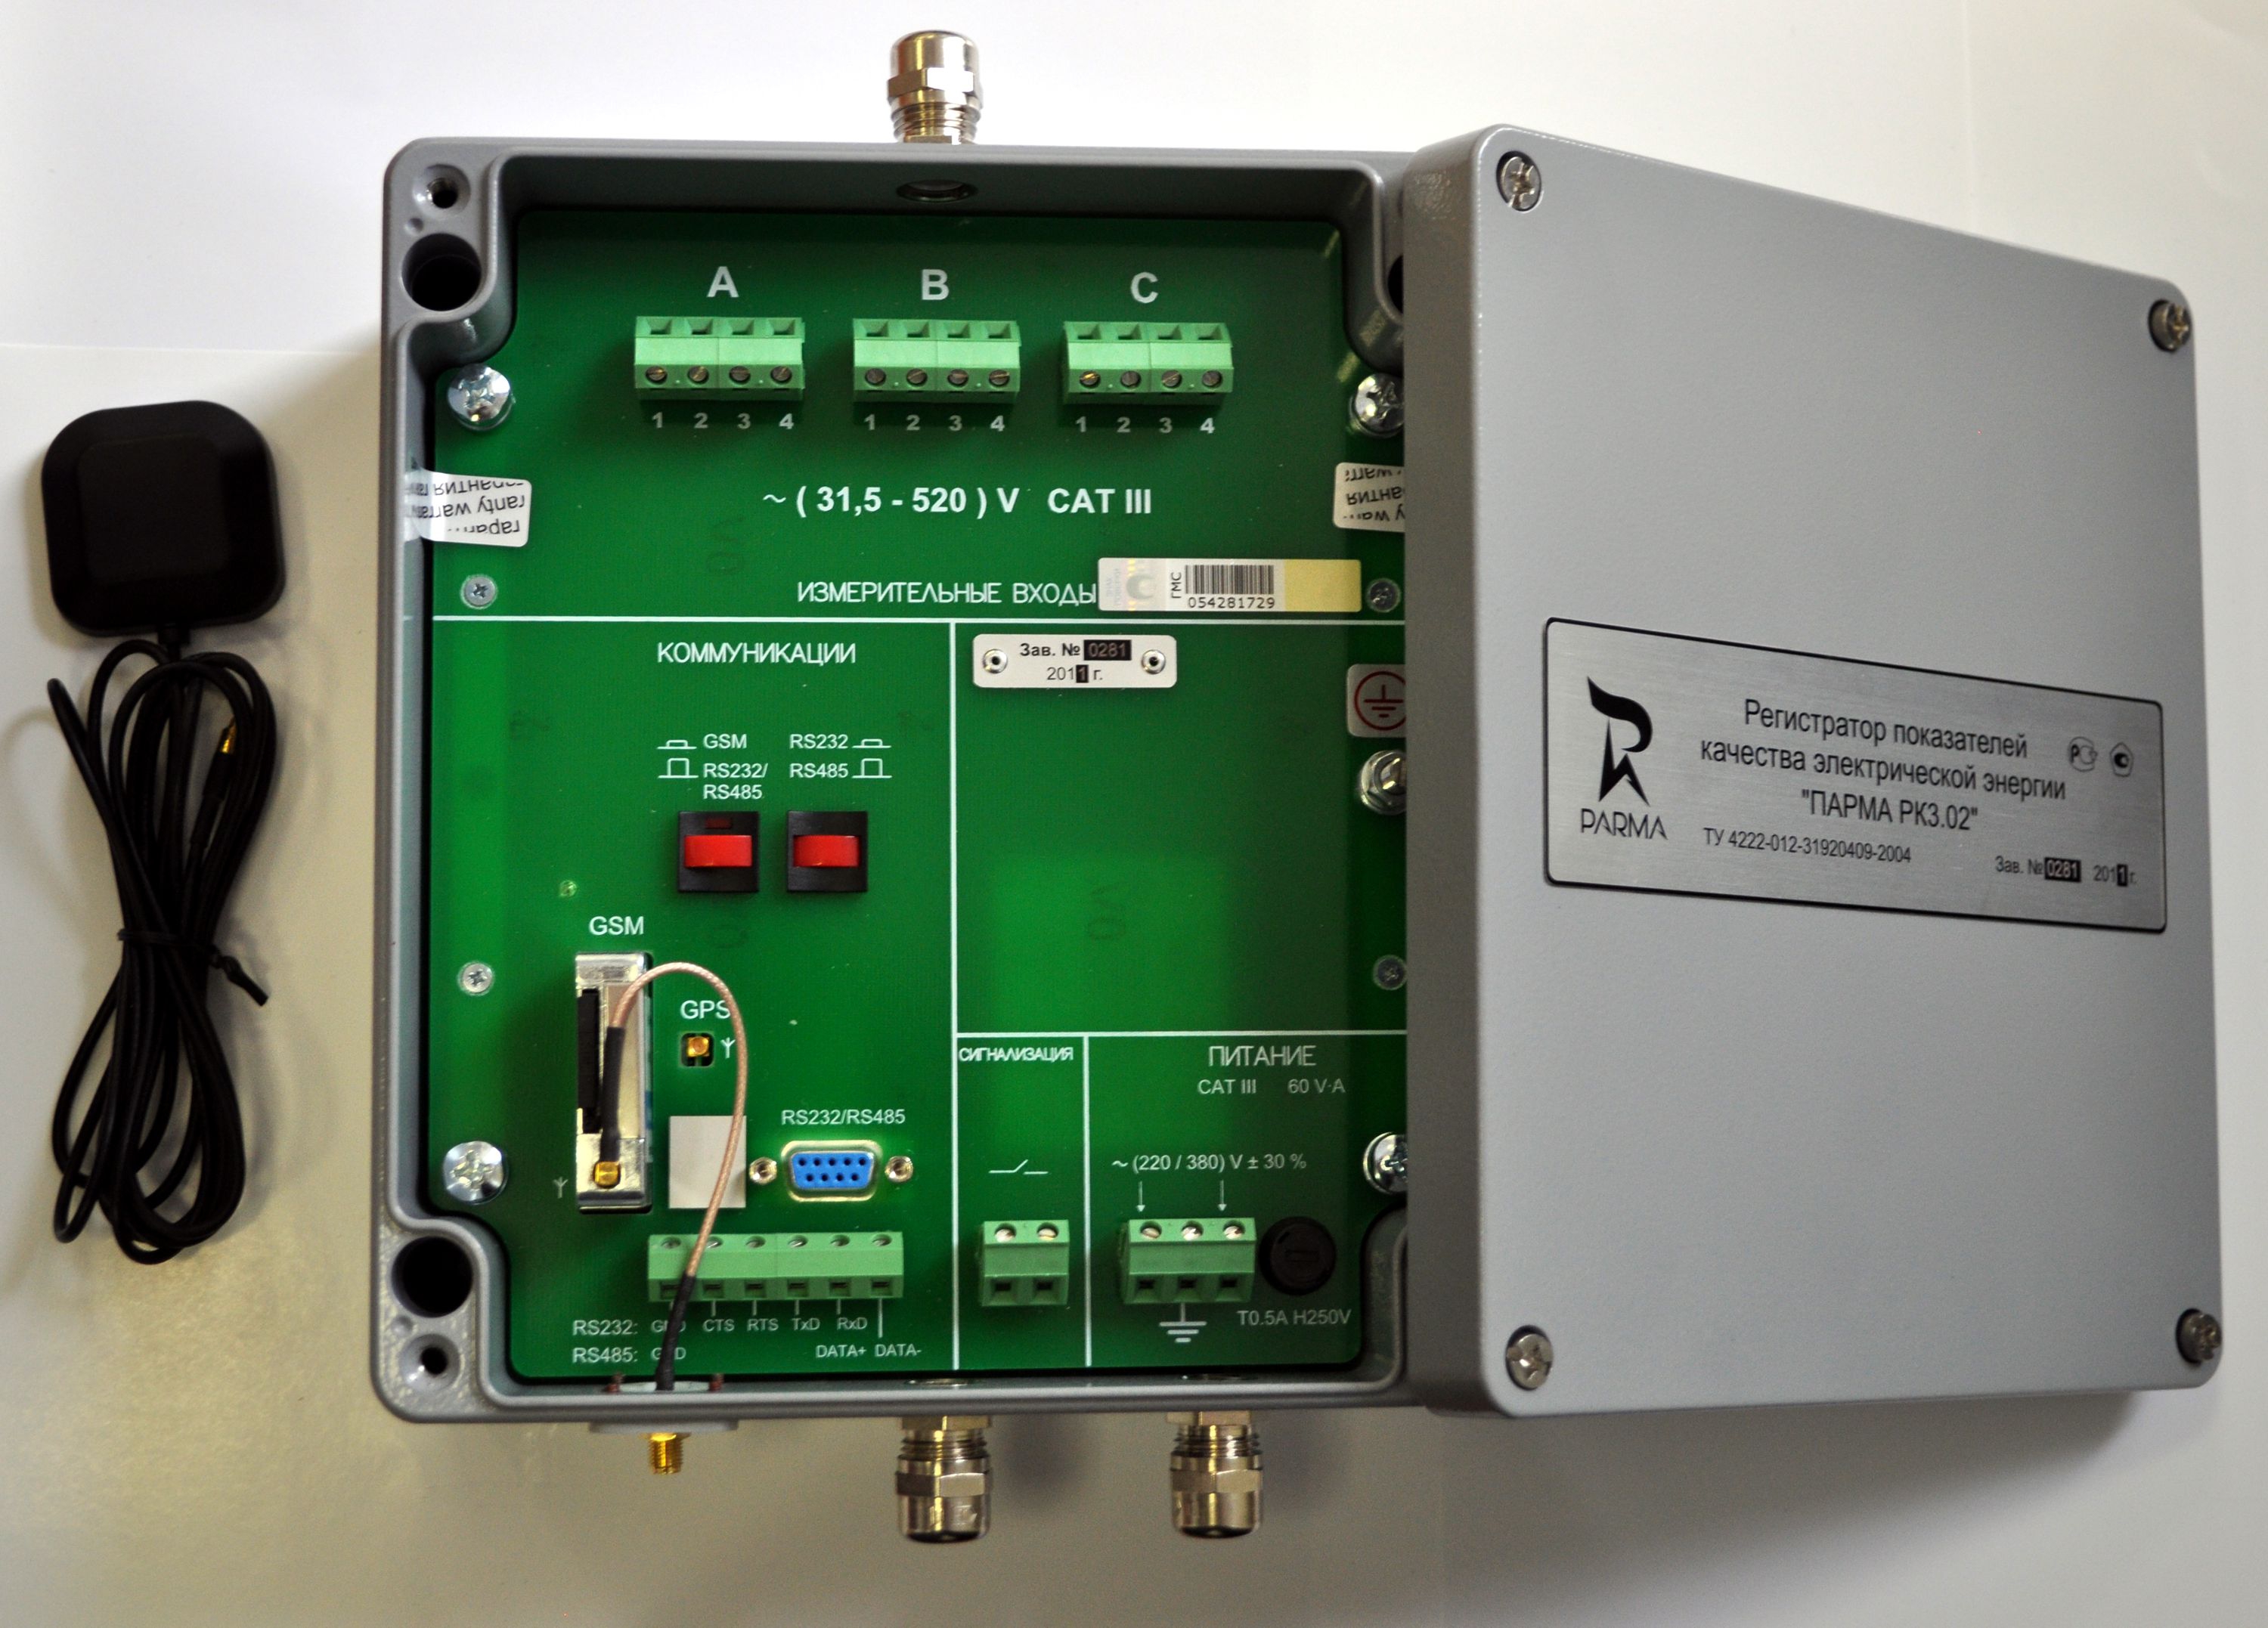 Парма РК 3.02 - регистратор (анализатор) качества электроэнергии